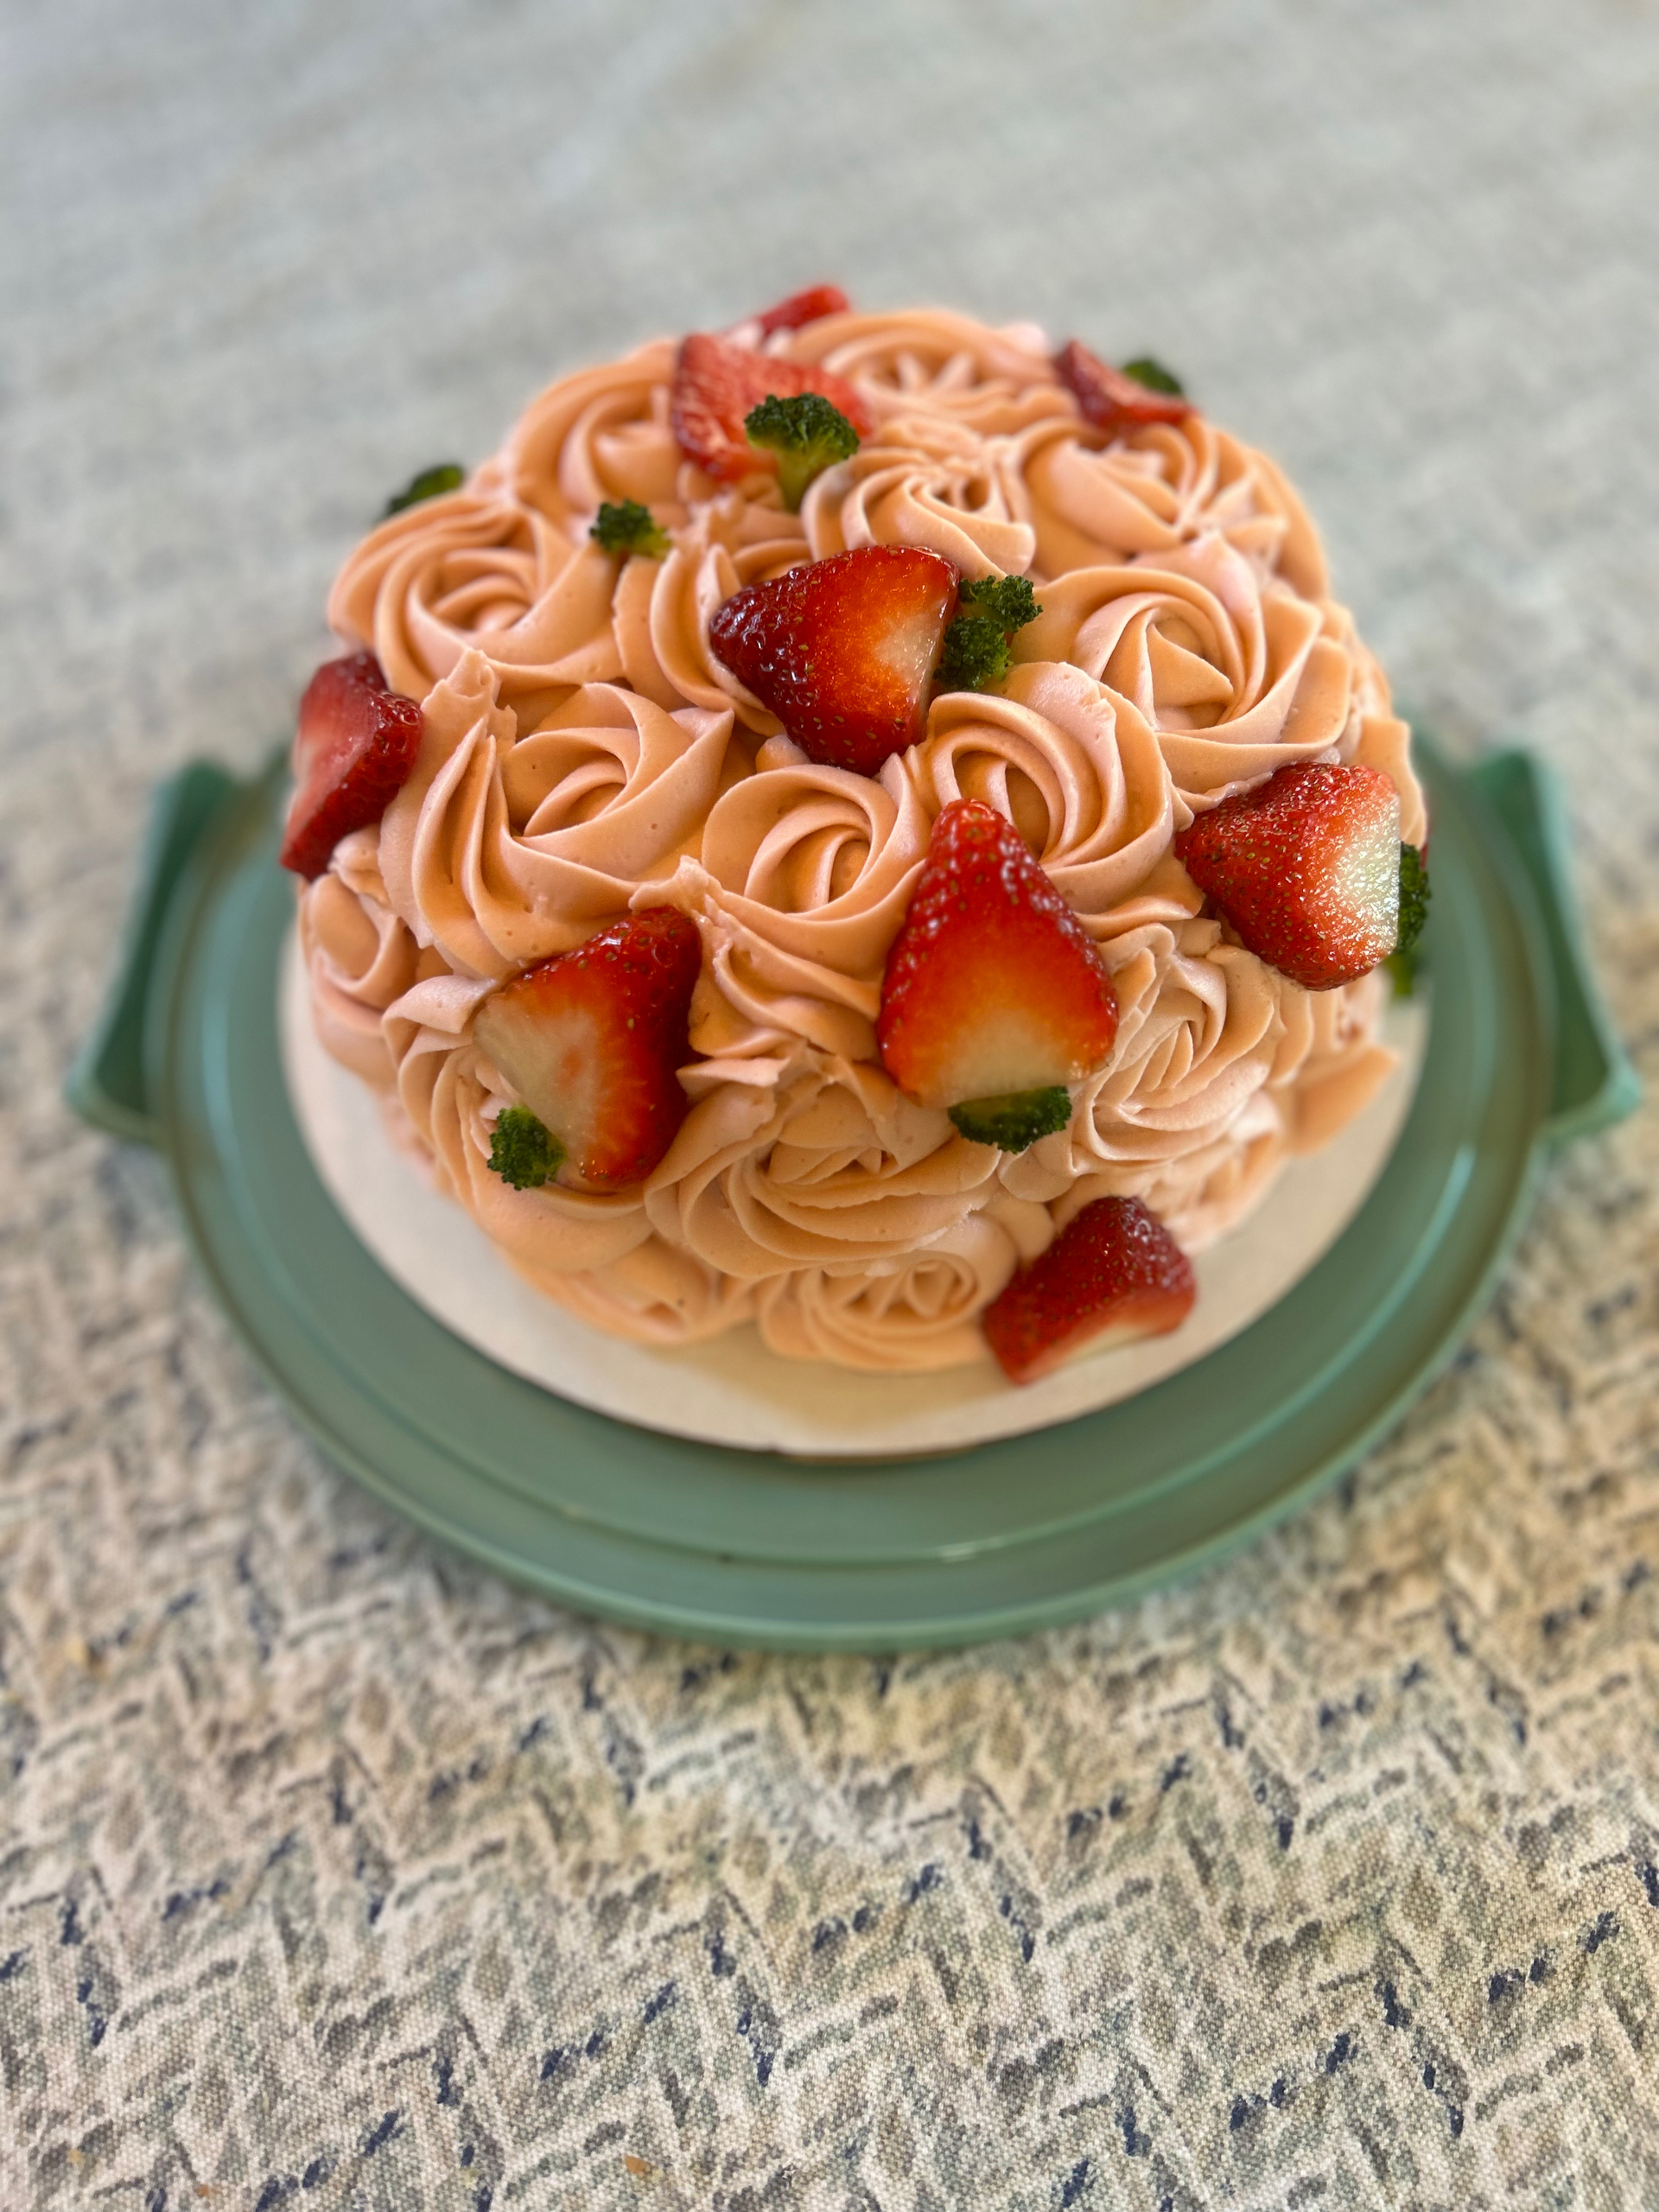 草莓玫瑰蛋糕配草莓白巧马斯卡彭奶油和杏仁海绵蛋糕